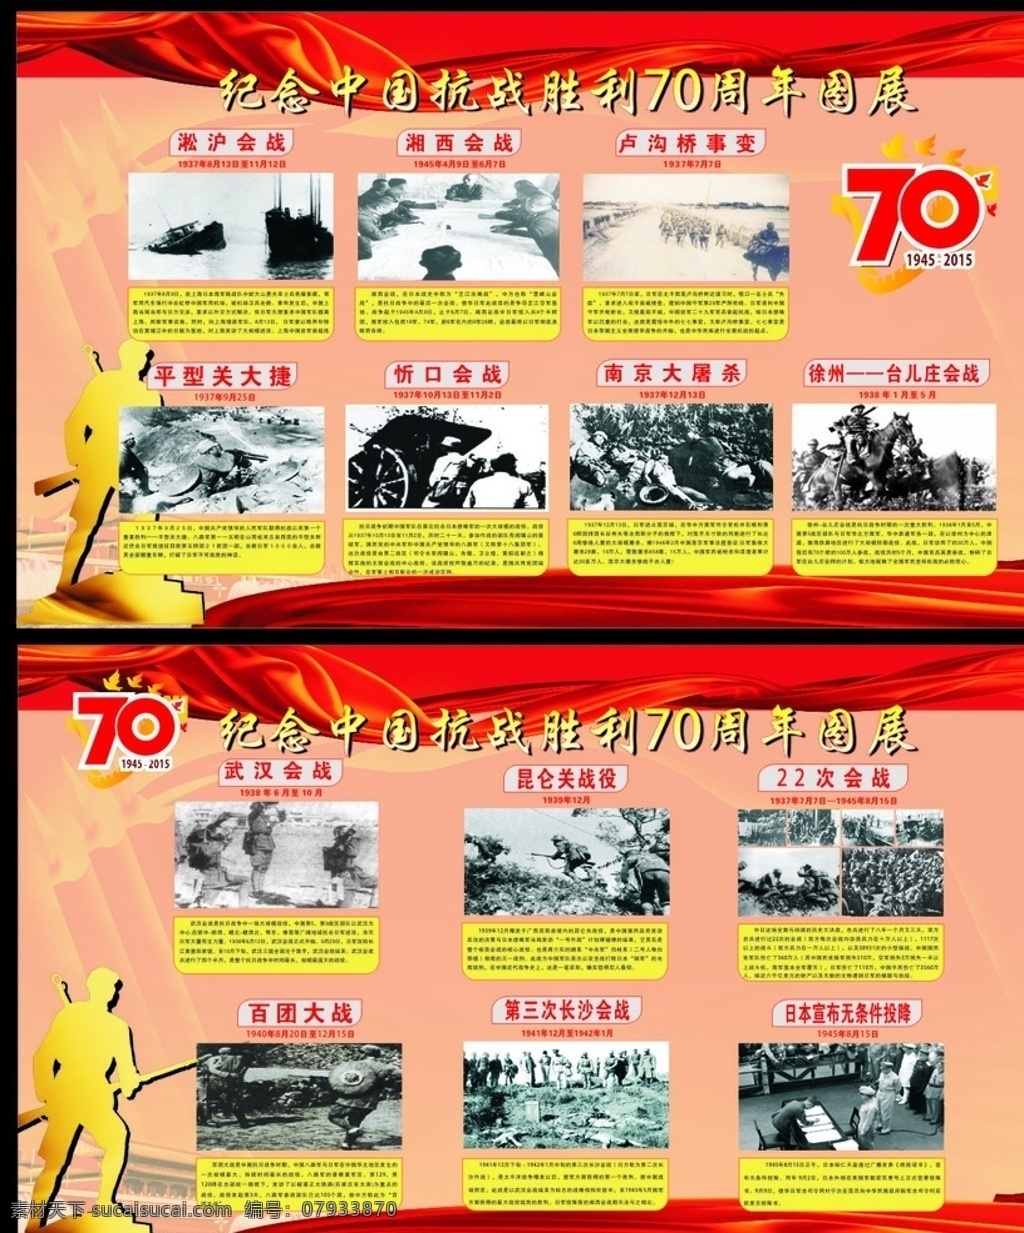 纪念 中国 抗战 胜利 周年 纪念抗战胜利 70周年 抗战70周年 底色 展板 宣传栏 抗战胜利 红色 党